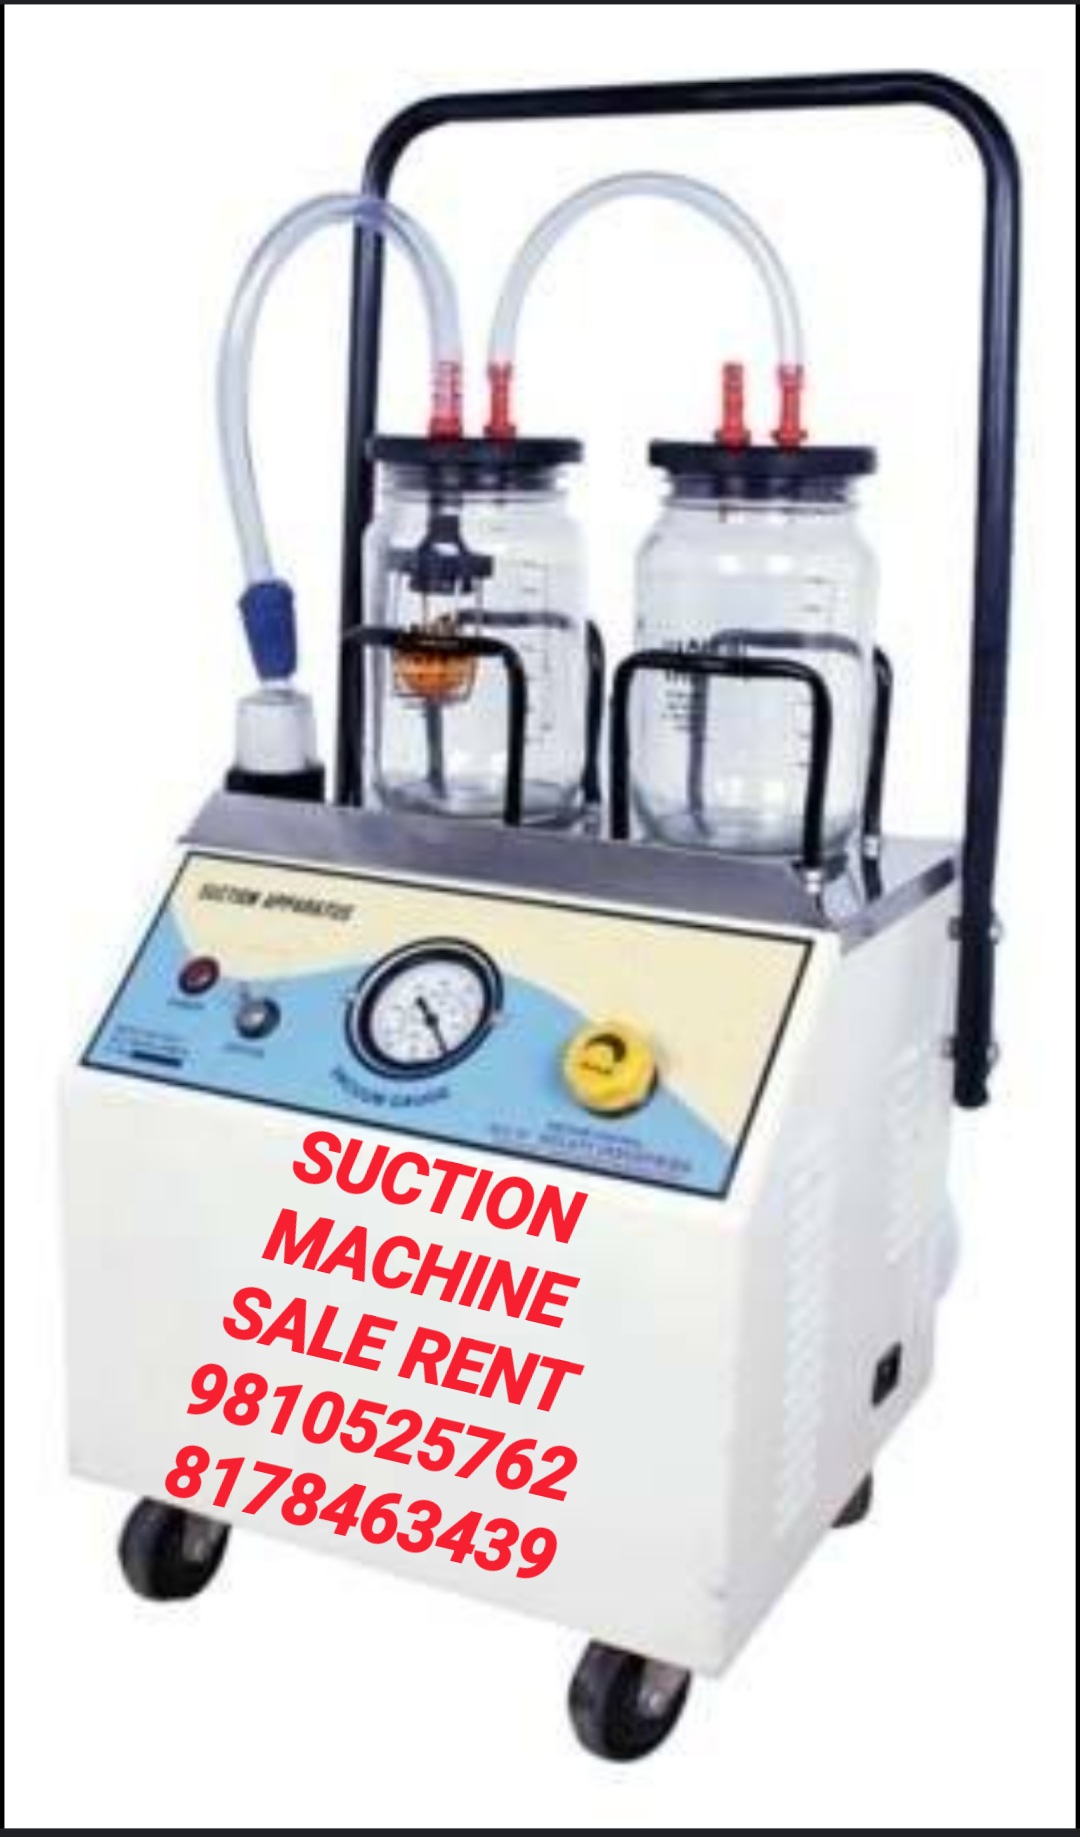 SUCTION MACHINE FOR RENT IN INDIRAPURAM 8178463439